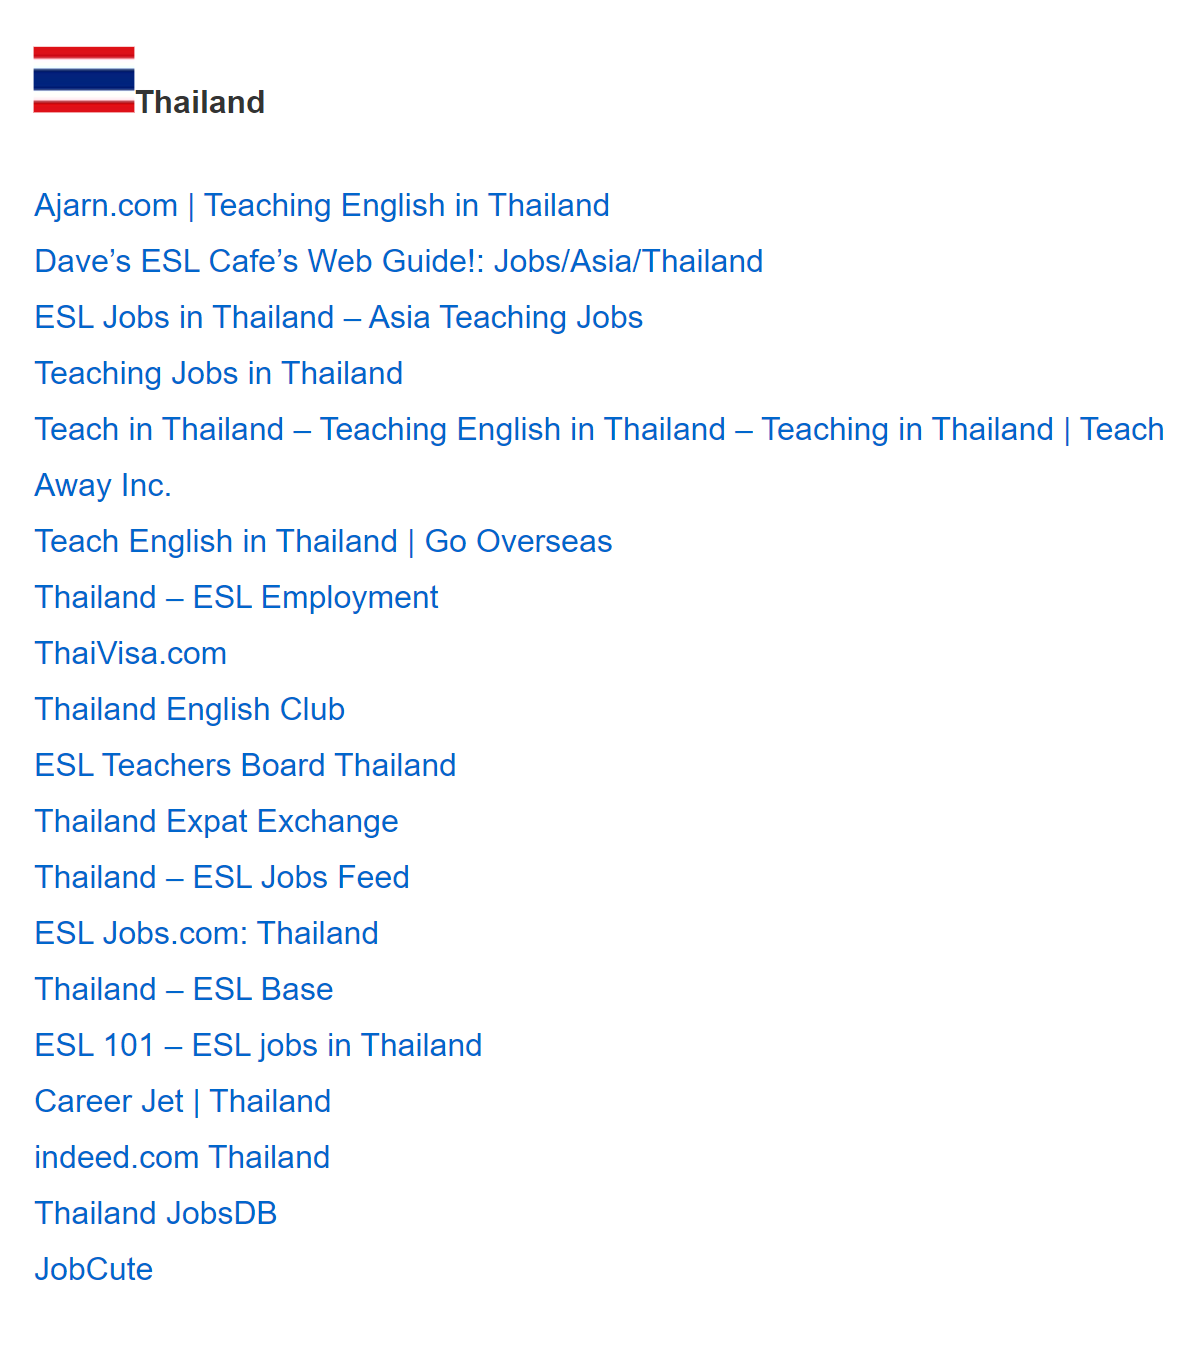 Список ресурсов по&nbsp;поиску работы в&nbsp;Таиланде, доступный после получения сертификата&nbsp;TEFL